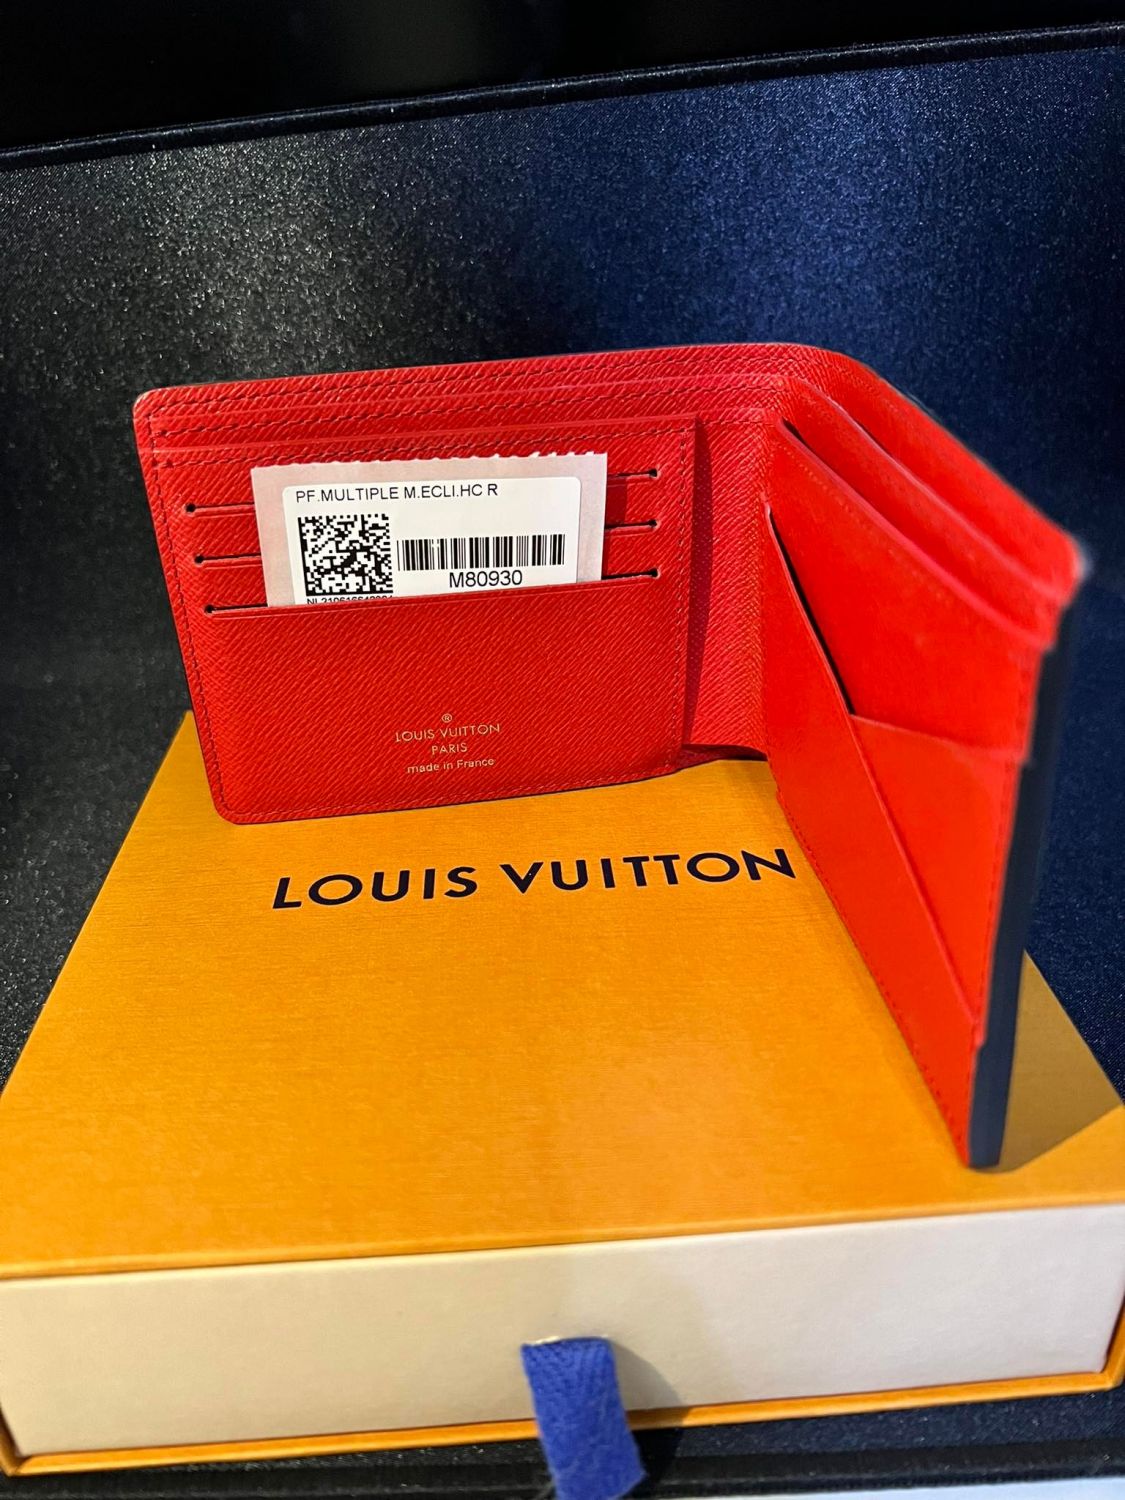 Louis Vuitton Damier Graphite Canvas Malletier Paris 1854 Mutiple Wallet